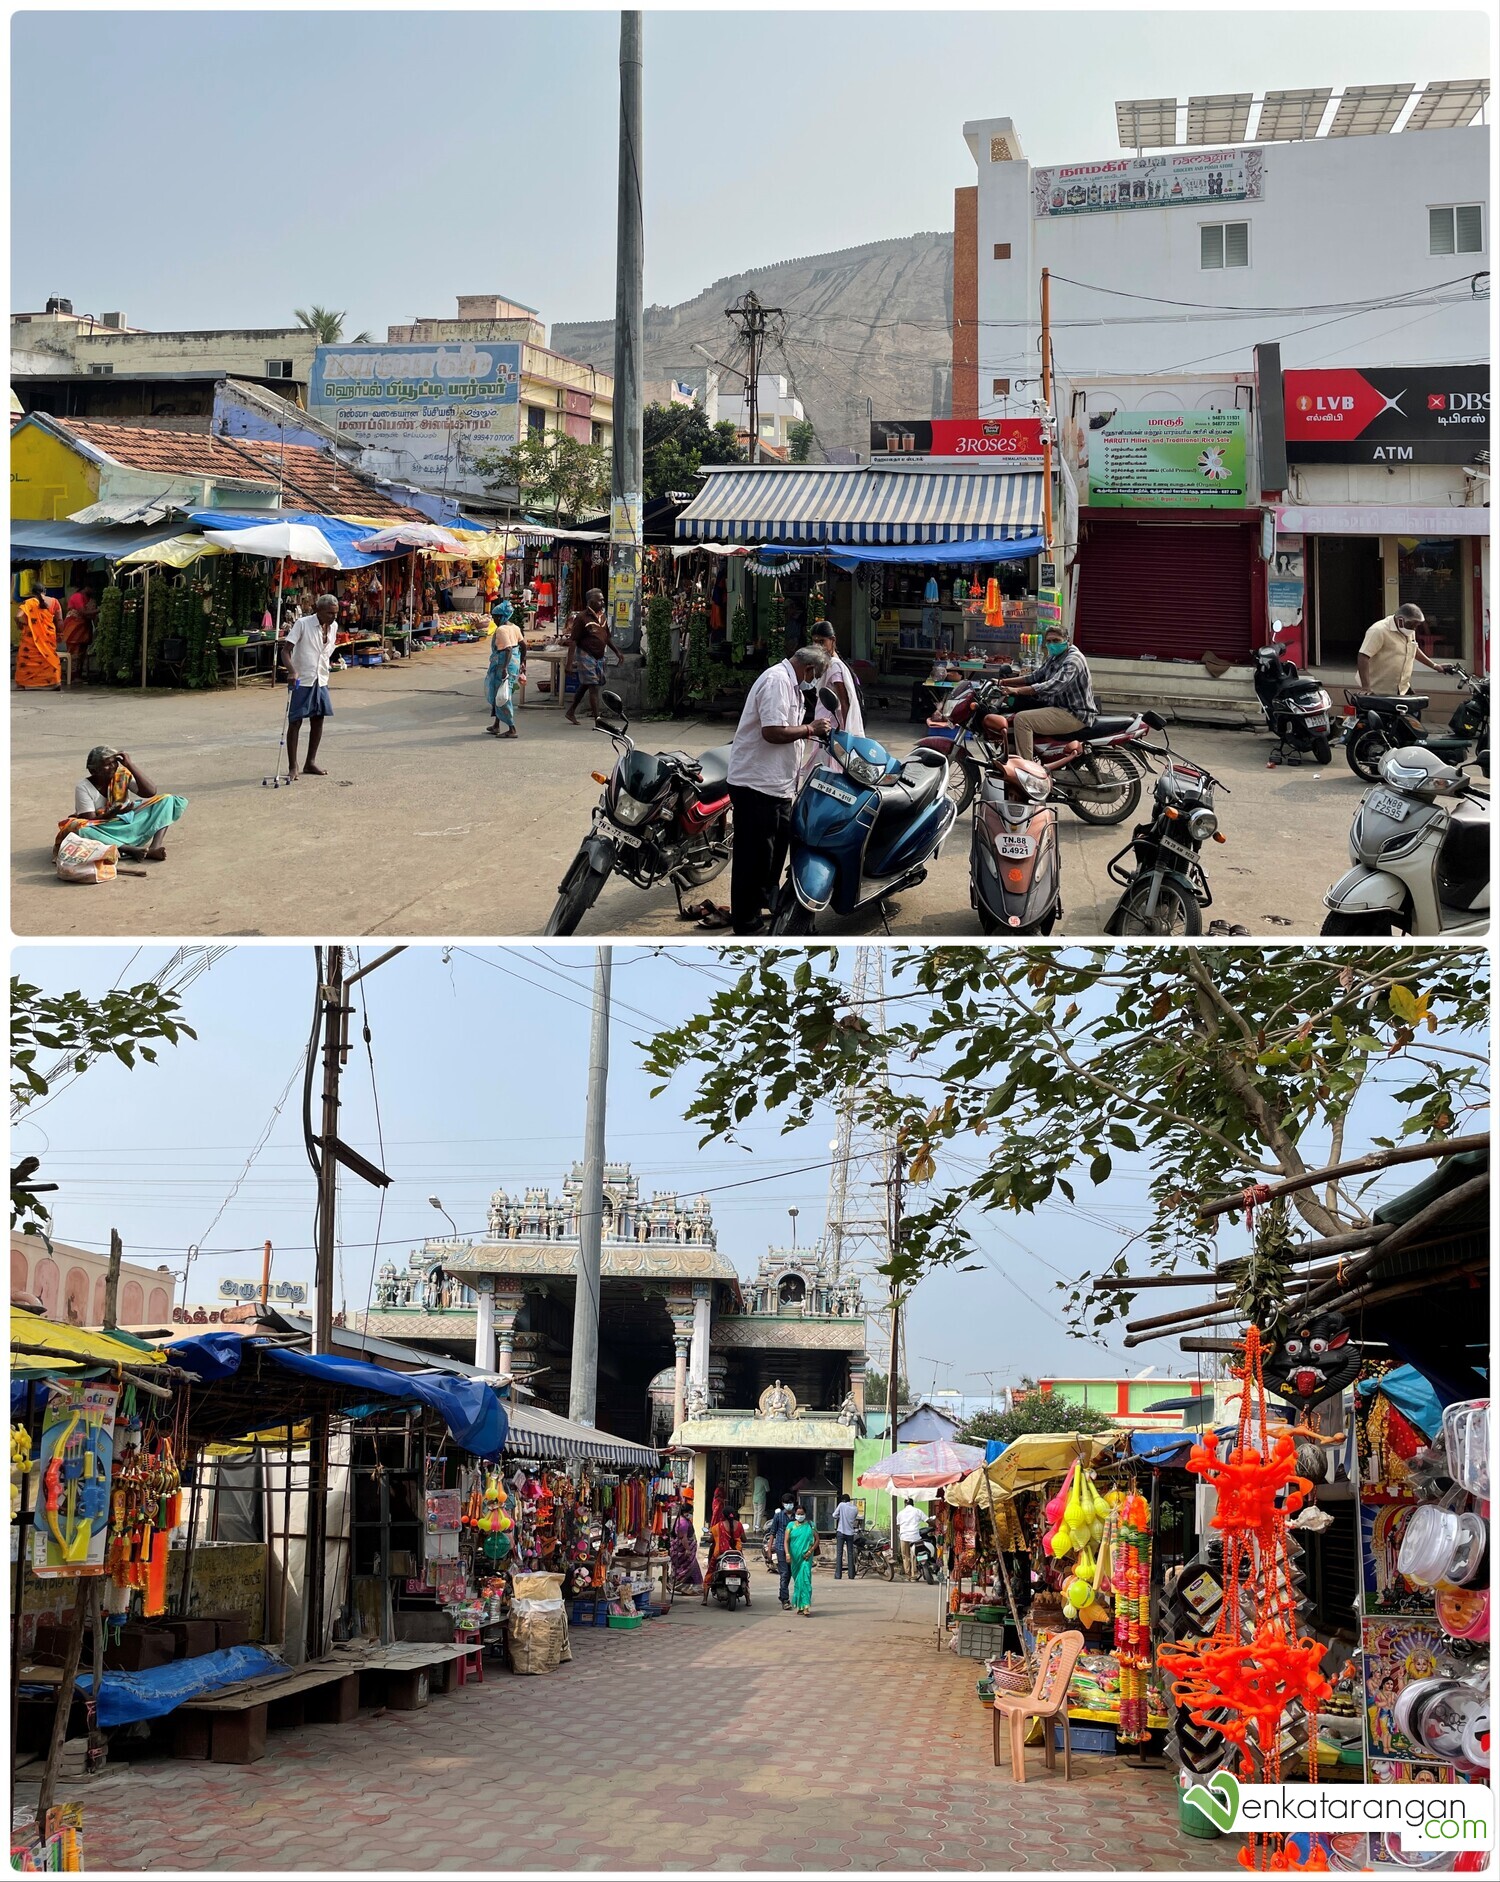 Shops facing the Namakkal Sri Anjaneyar Temple